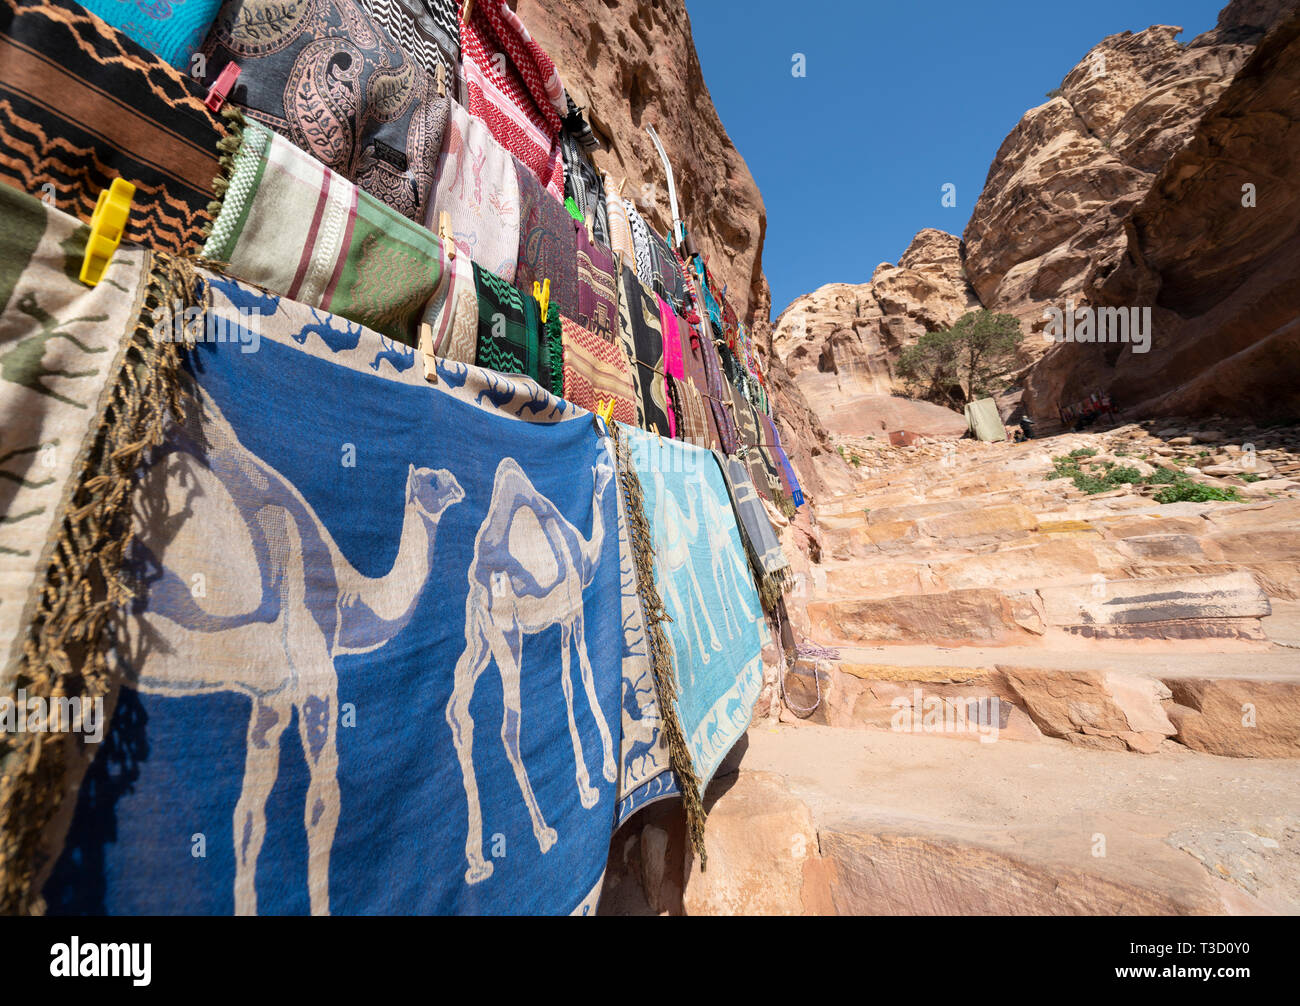 Detalle del stand con pashminas regalo turístico y otros tejidos coloridos textiles locales en Petra (Jordania) Foto de stock